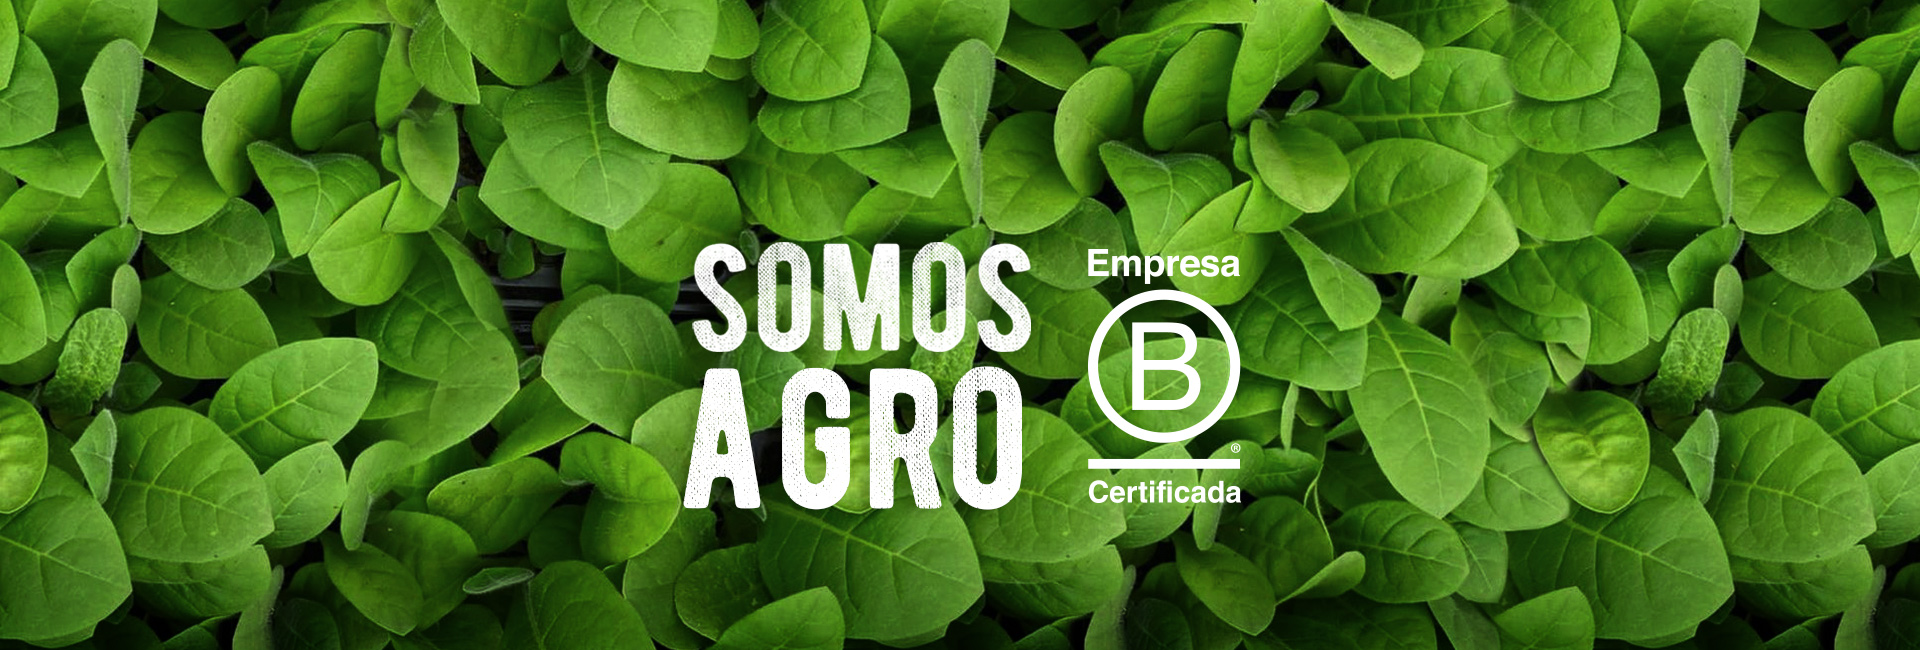 (c) Agro-sustentable.com